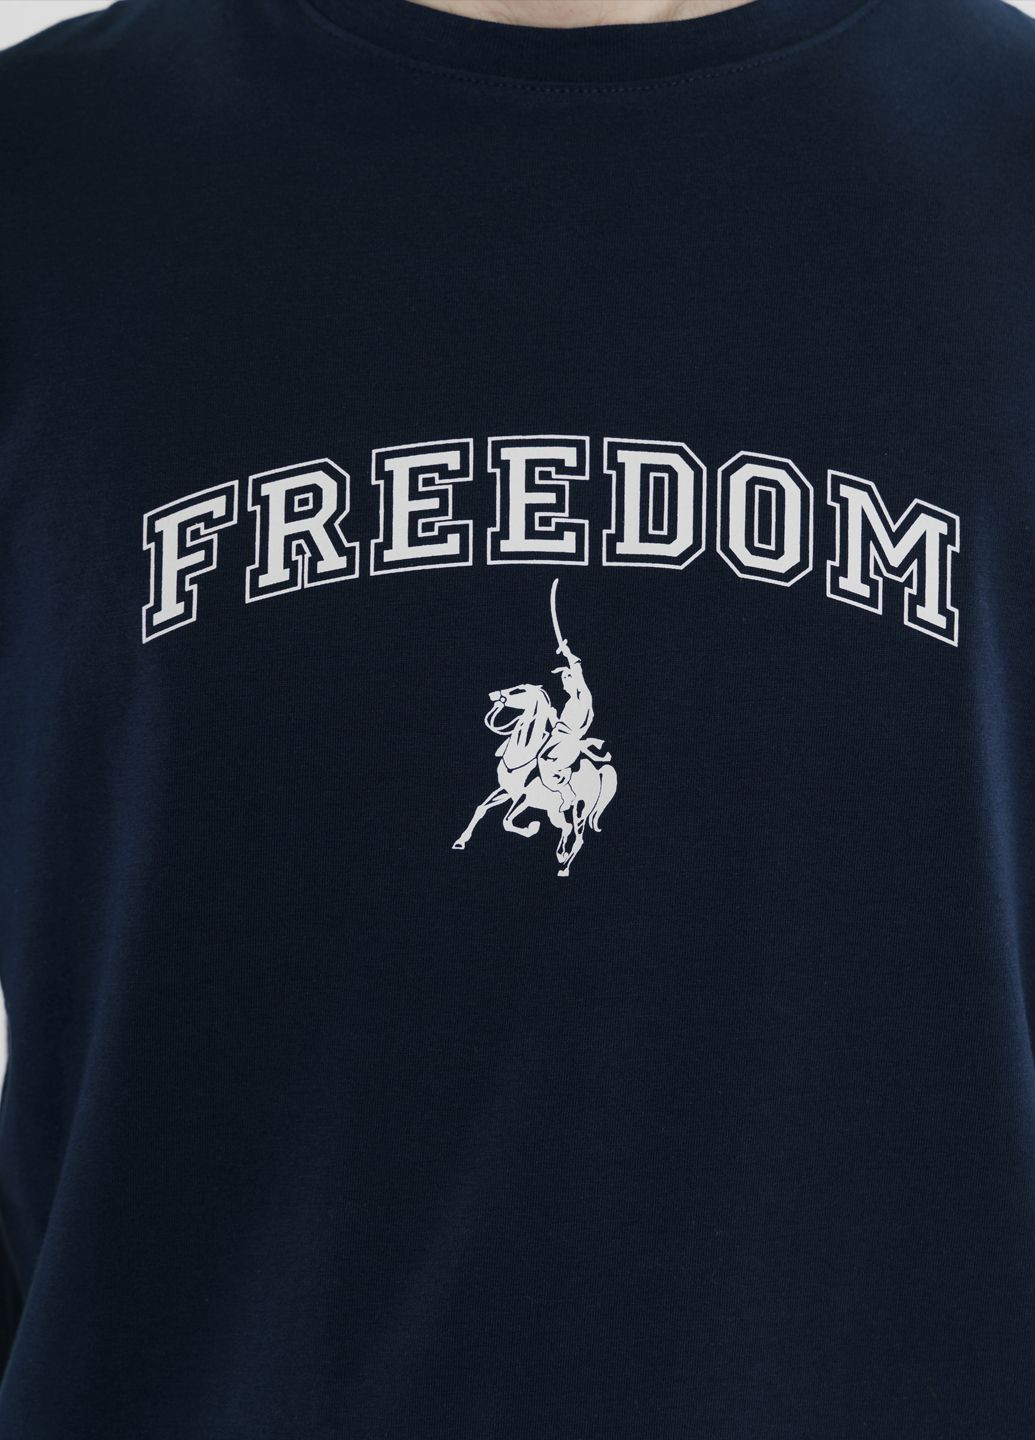 Синяя футболка унисекс freedom синяя Arber T-SHIRT FF19